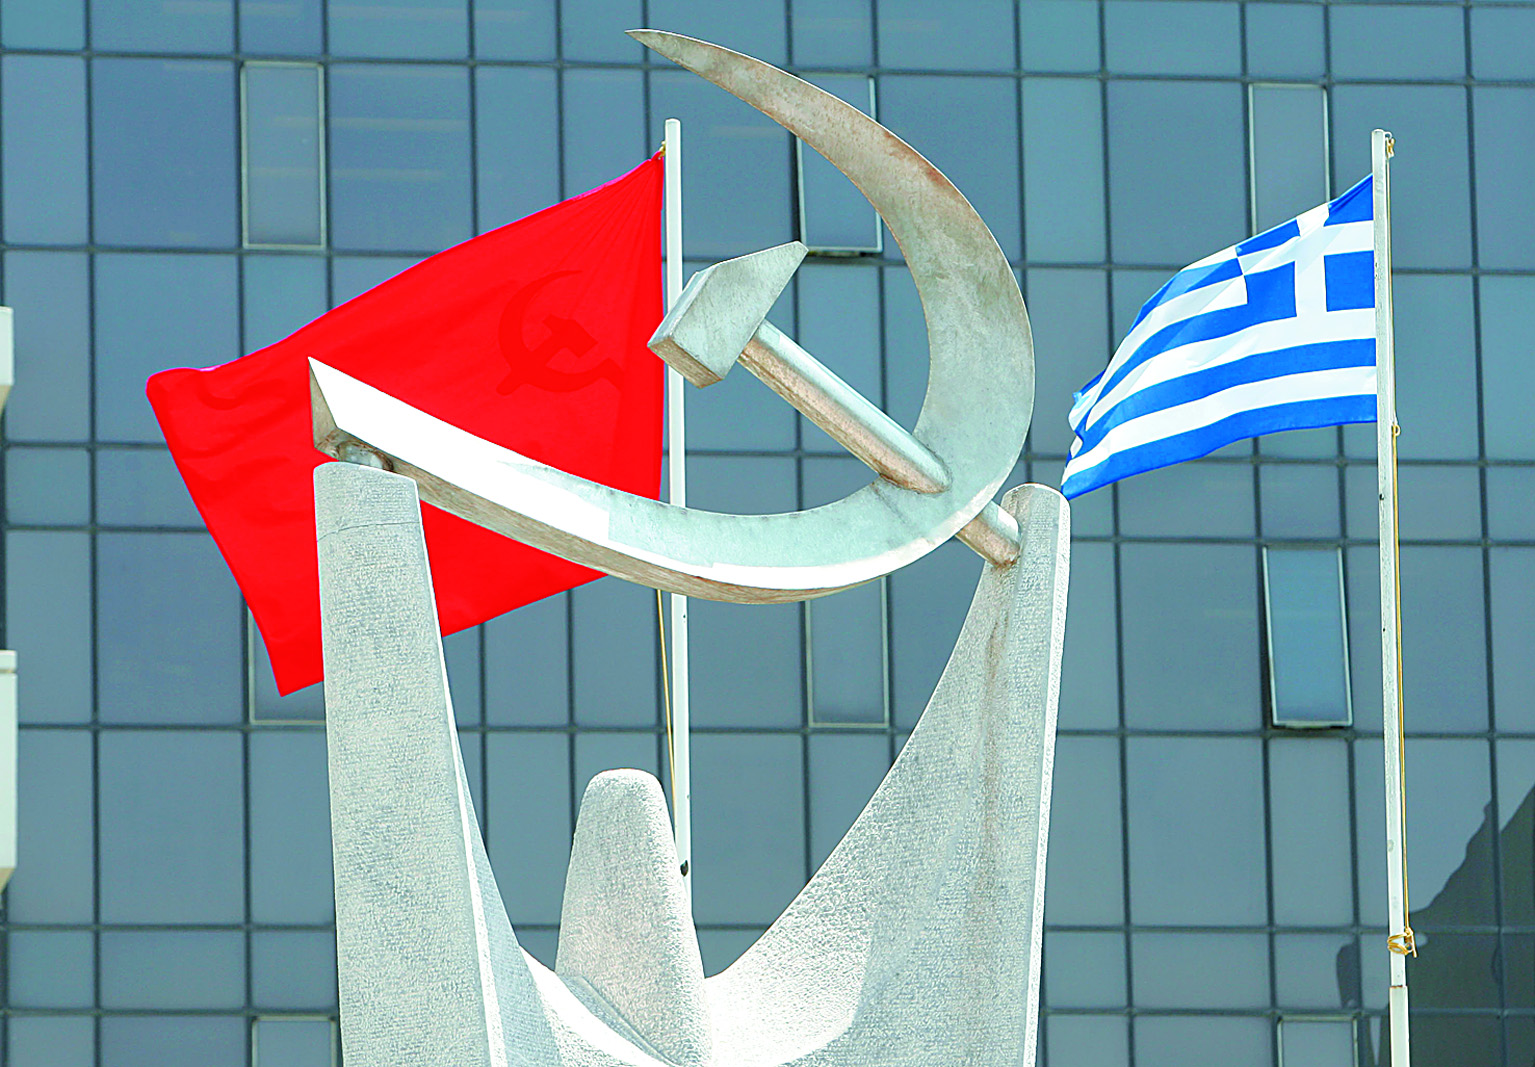 ΚΚΕ: «Απόδοση ευθυνών για τα σκάνδαλα και αντιμετώπιση των μέτρων» | tovima.gr